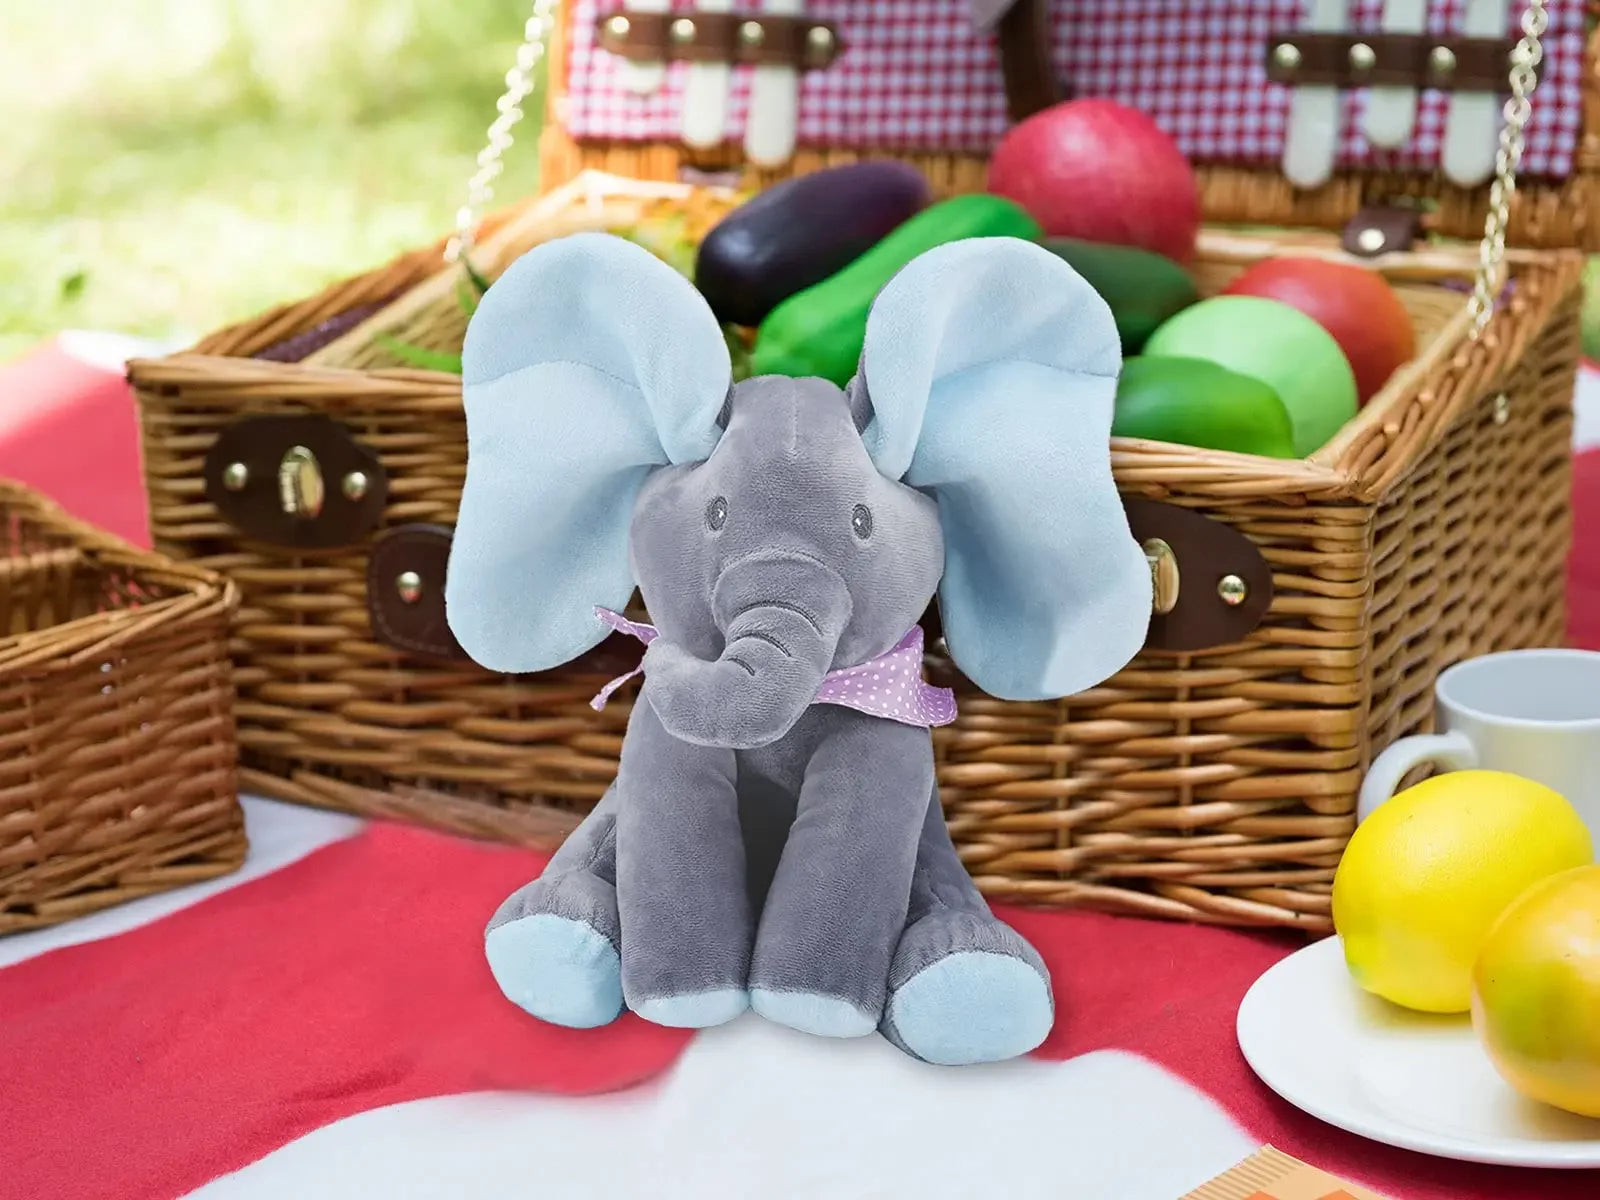 Un éléphant en peluche BABY-PREMA posé sur une couverture de pique-nique devant un panier de pique-nique en osier rempli d'œufs colorés, suggérant un thème de Pâques ou de printemps pour un bébé.